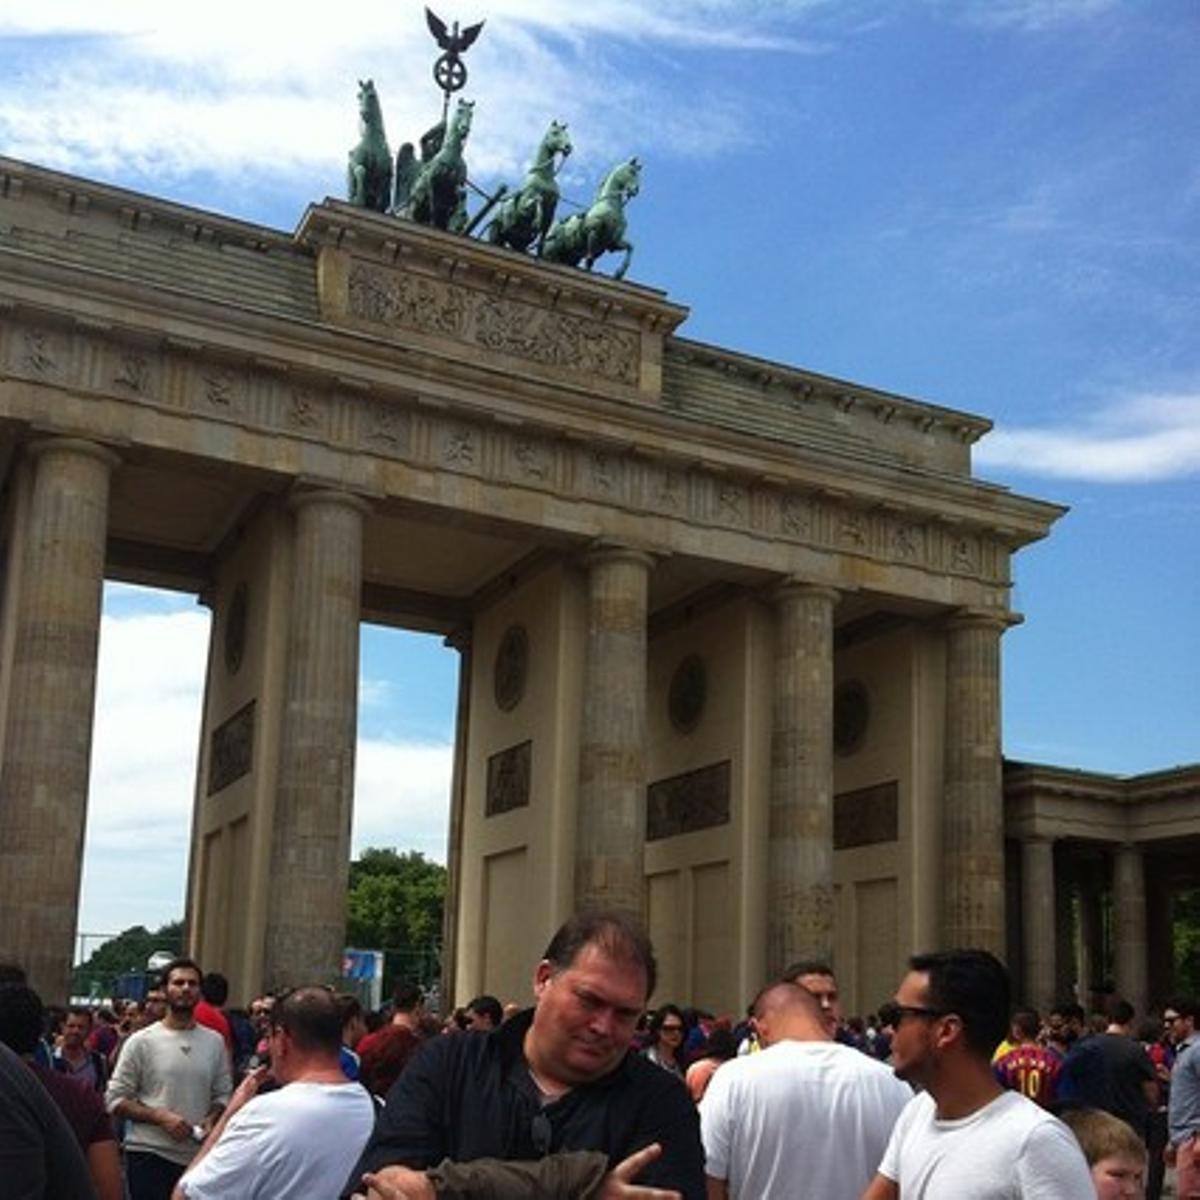 La puerta de Brandenburgo ha sido uno de los sitios históricos de Berlín que más se han teñido de azulgrana.